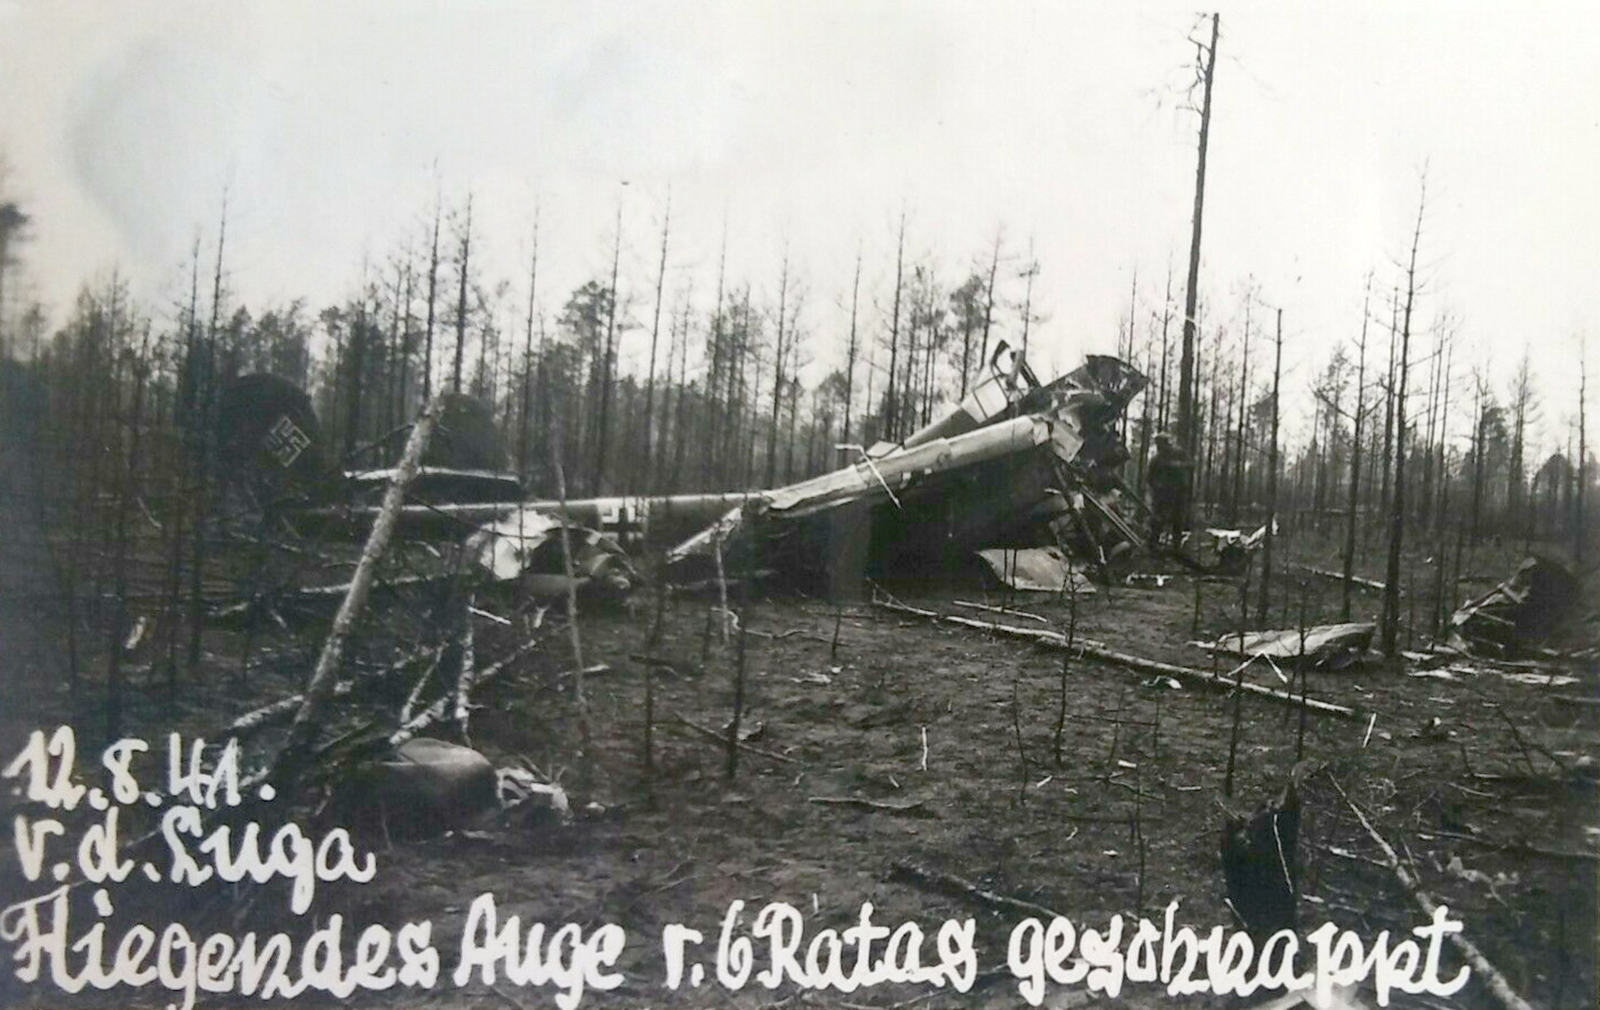 Focke Wulf Fw 189 crashsite Luga Russia 12th Aug 1941 ebay1